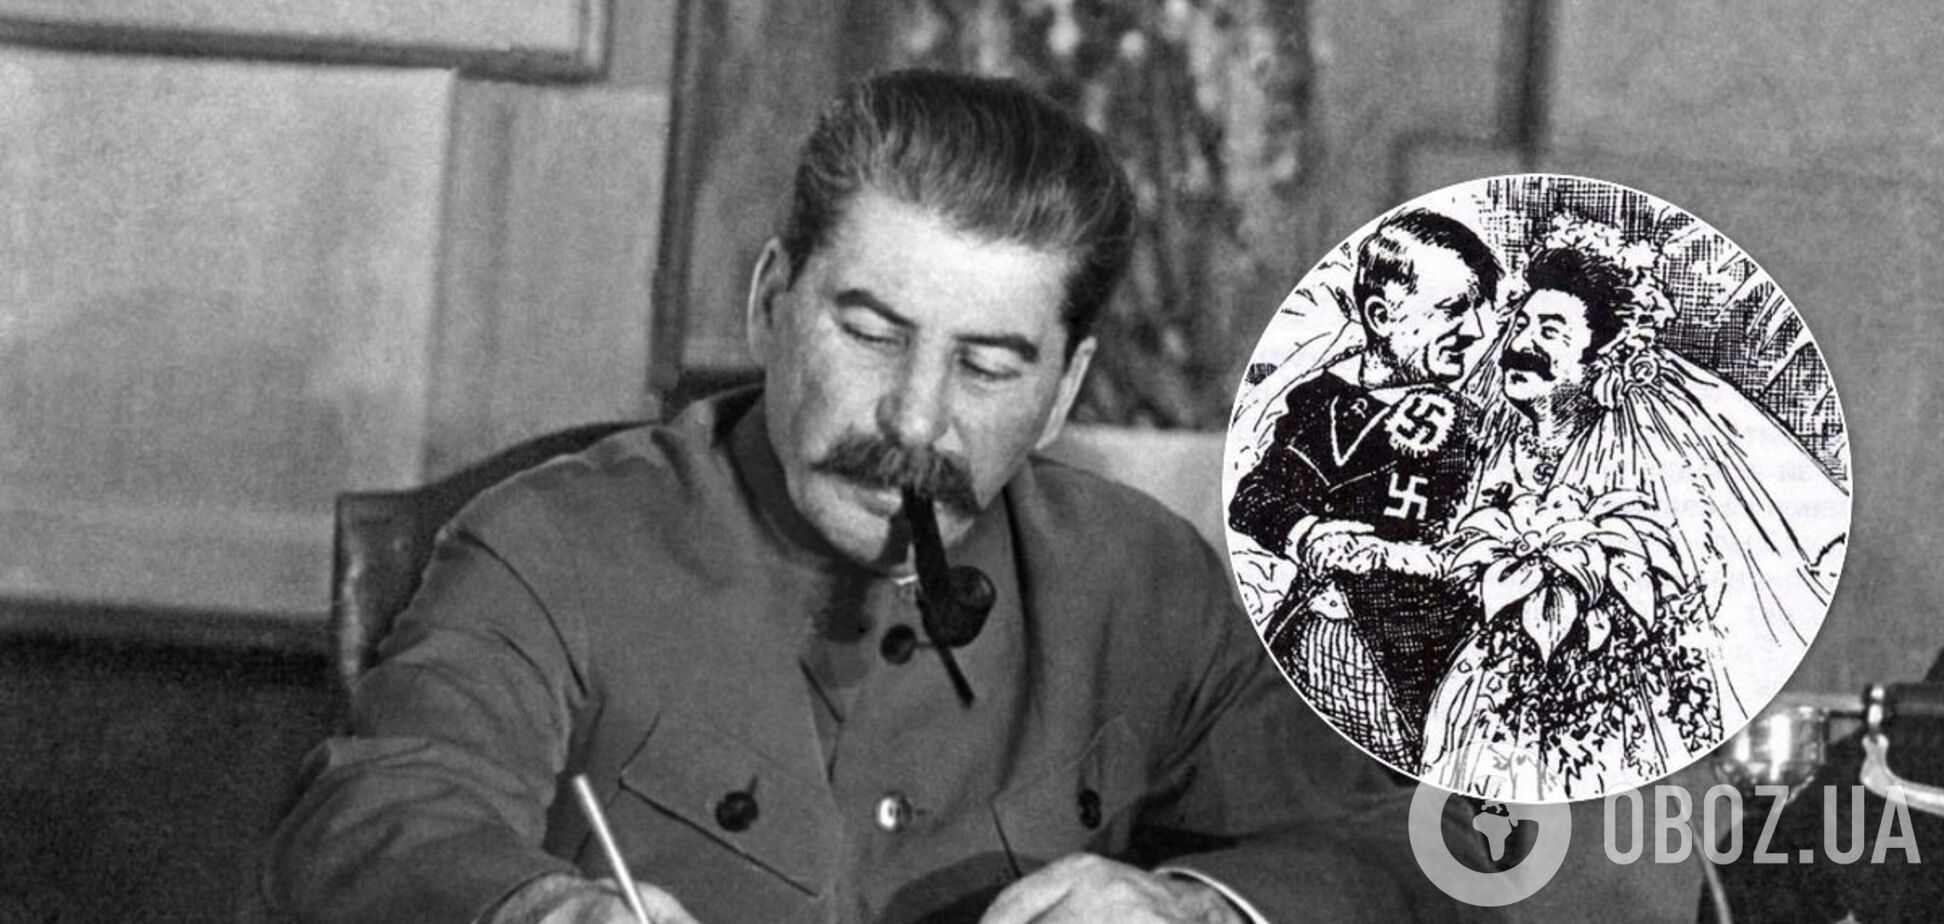 Історики нагадали про фото, що доводять співпрацю між Гітлером і Сталіним